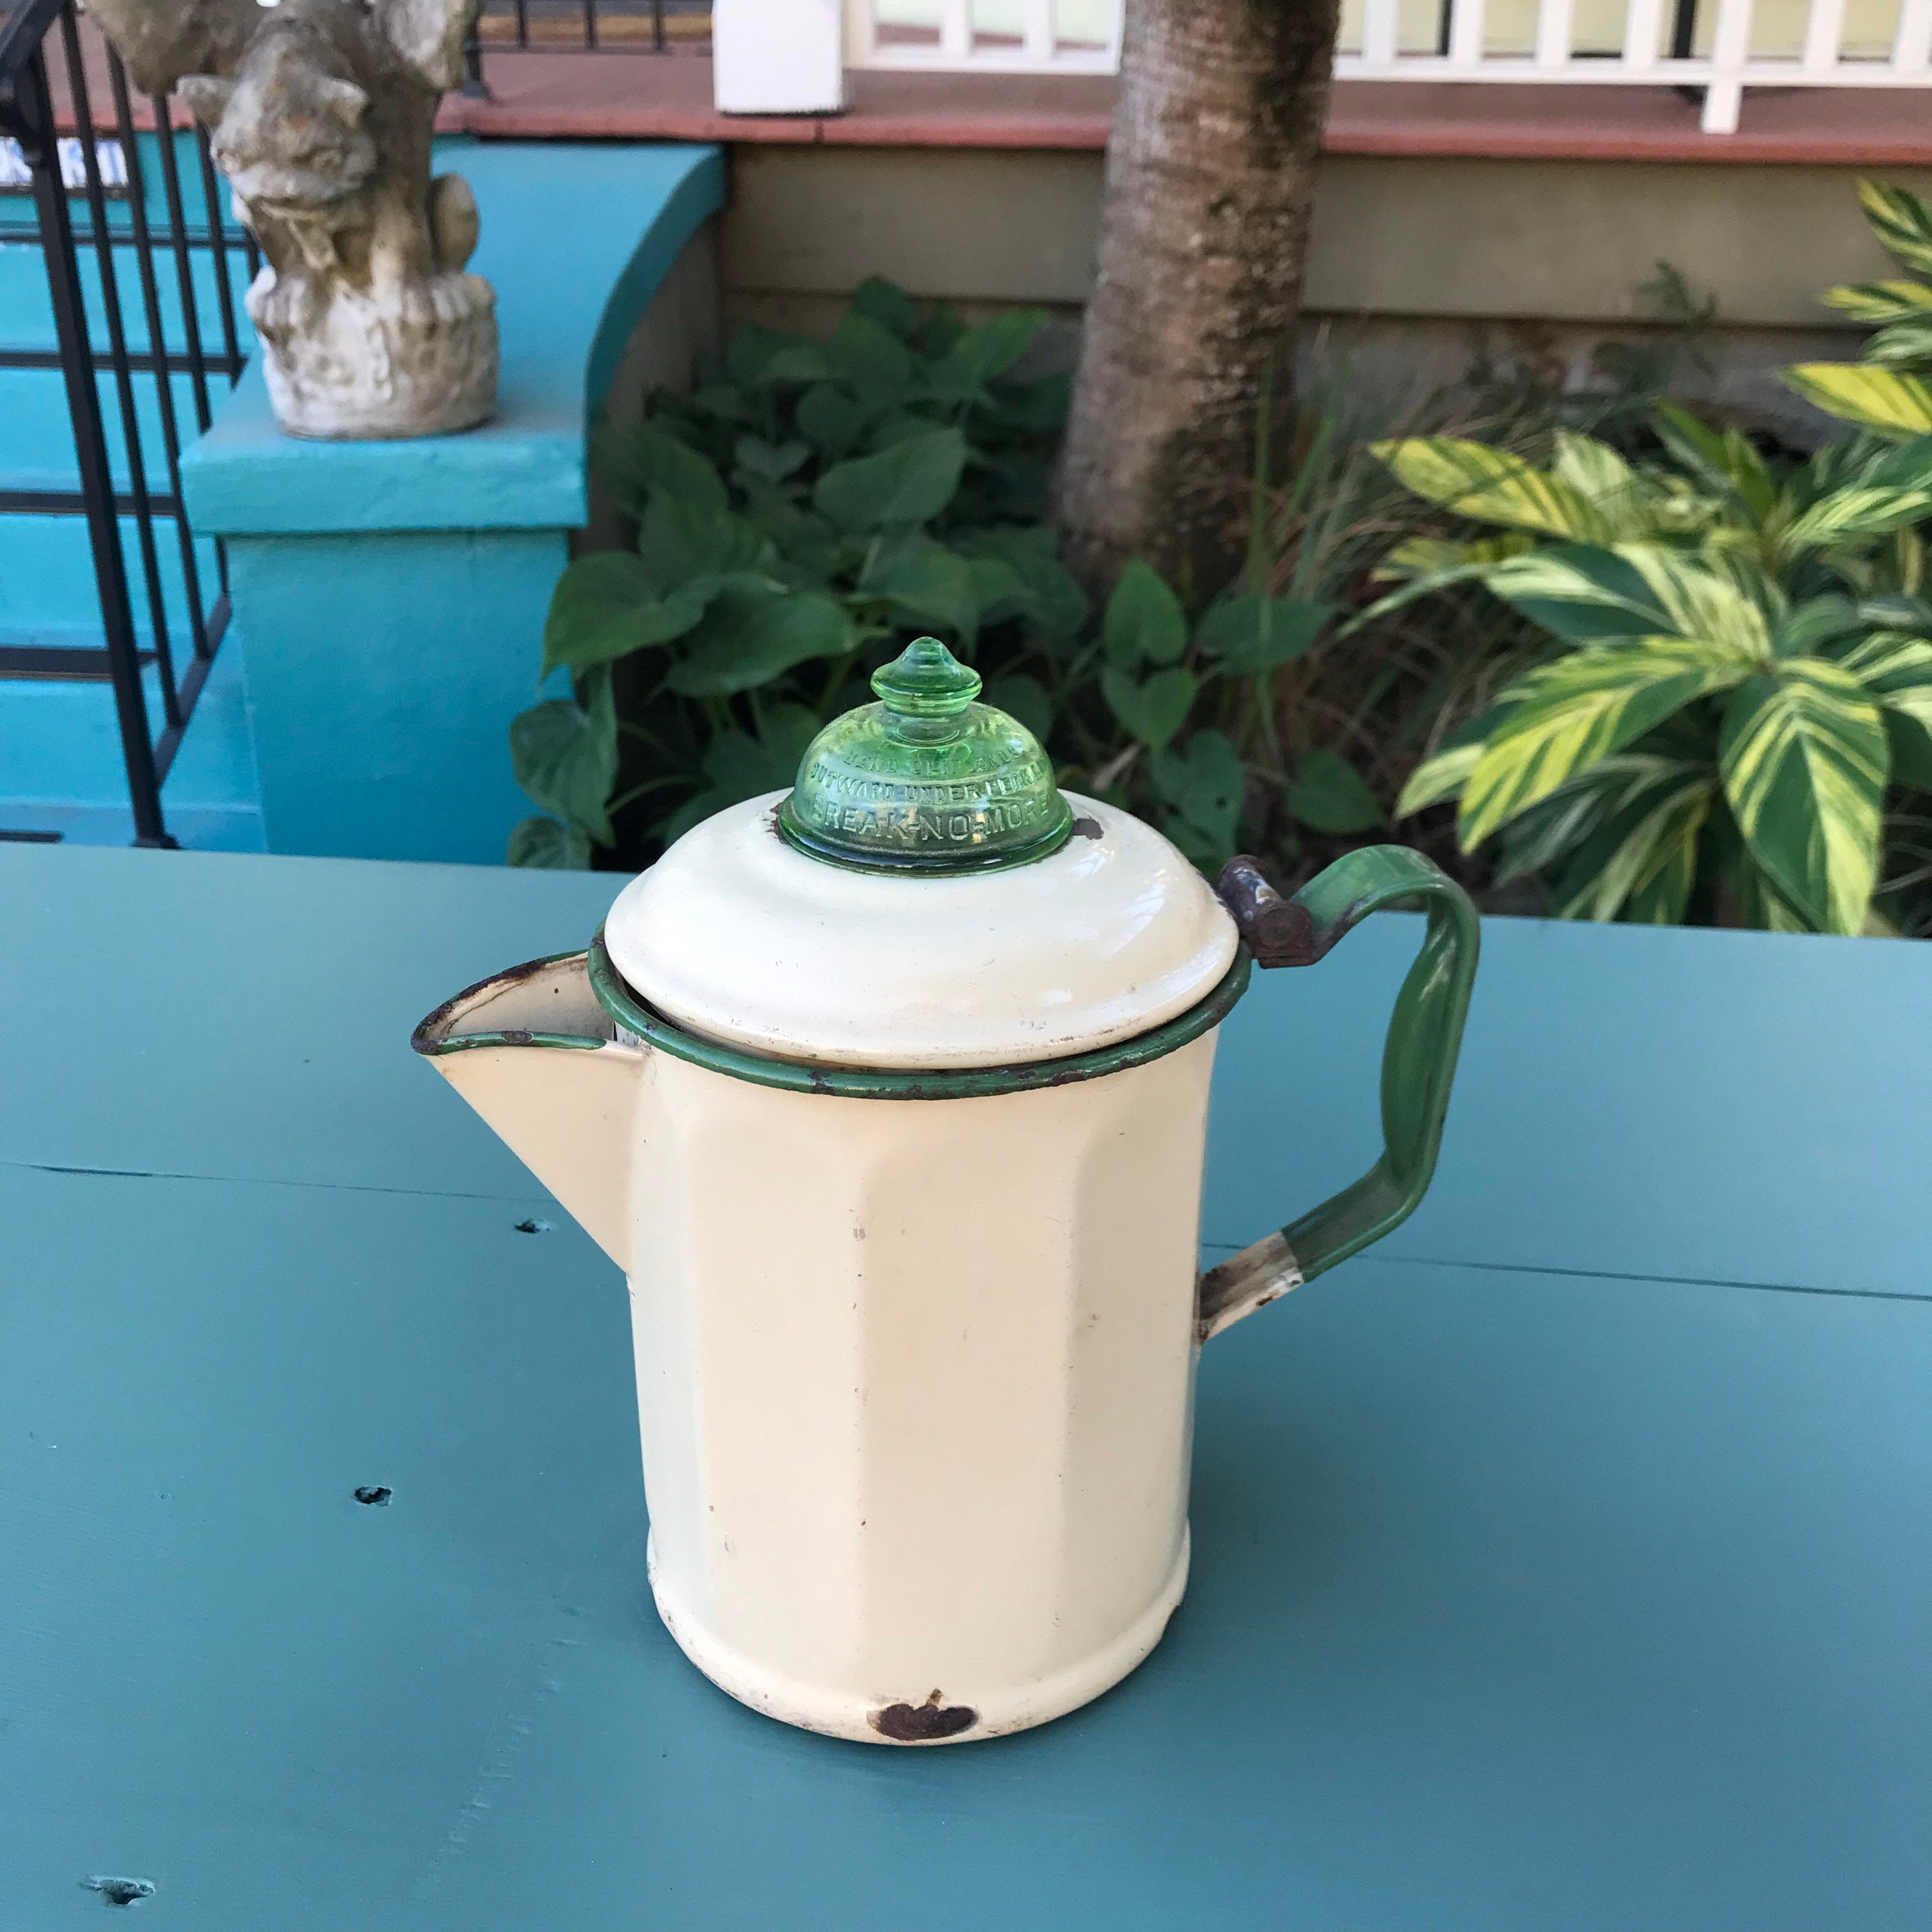 Vtg Metal Coffee Pot Percolator Stove Top Cardella Break No More Green Glass